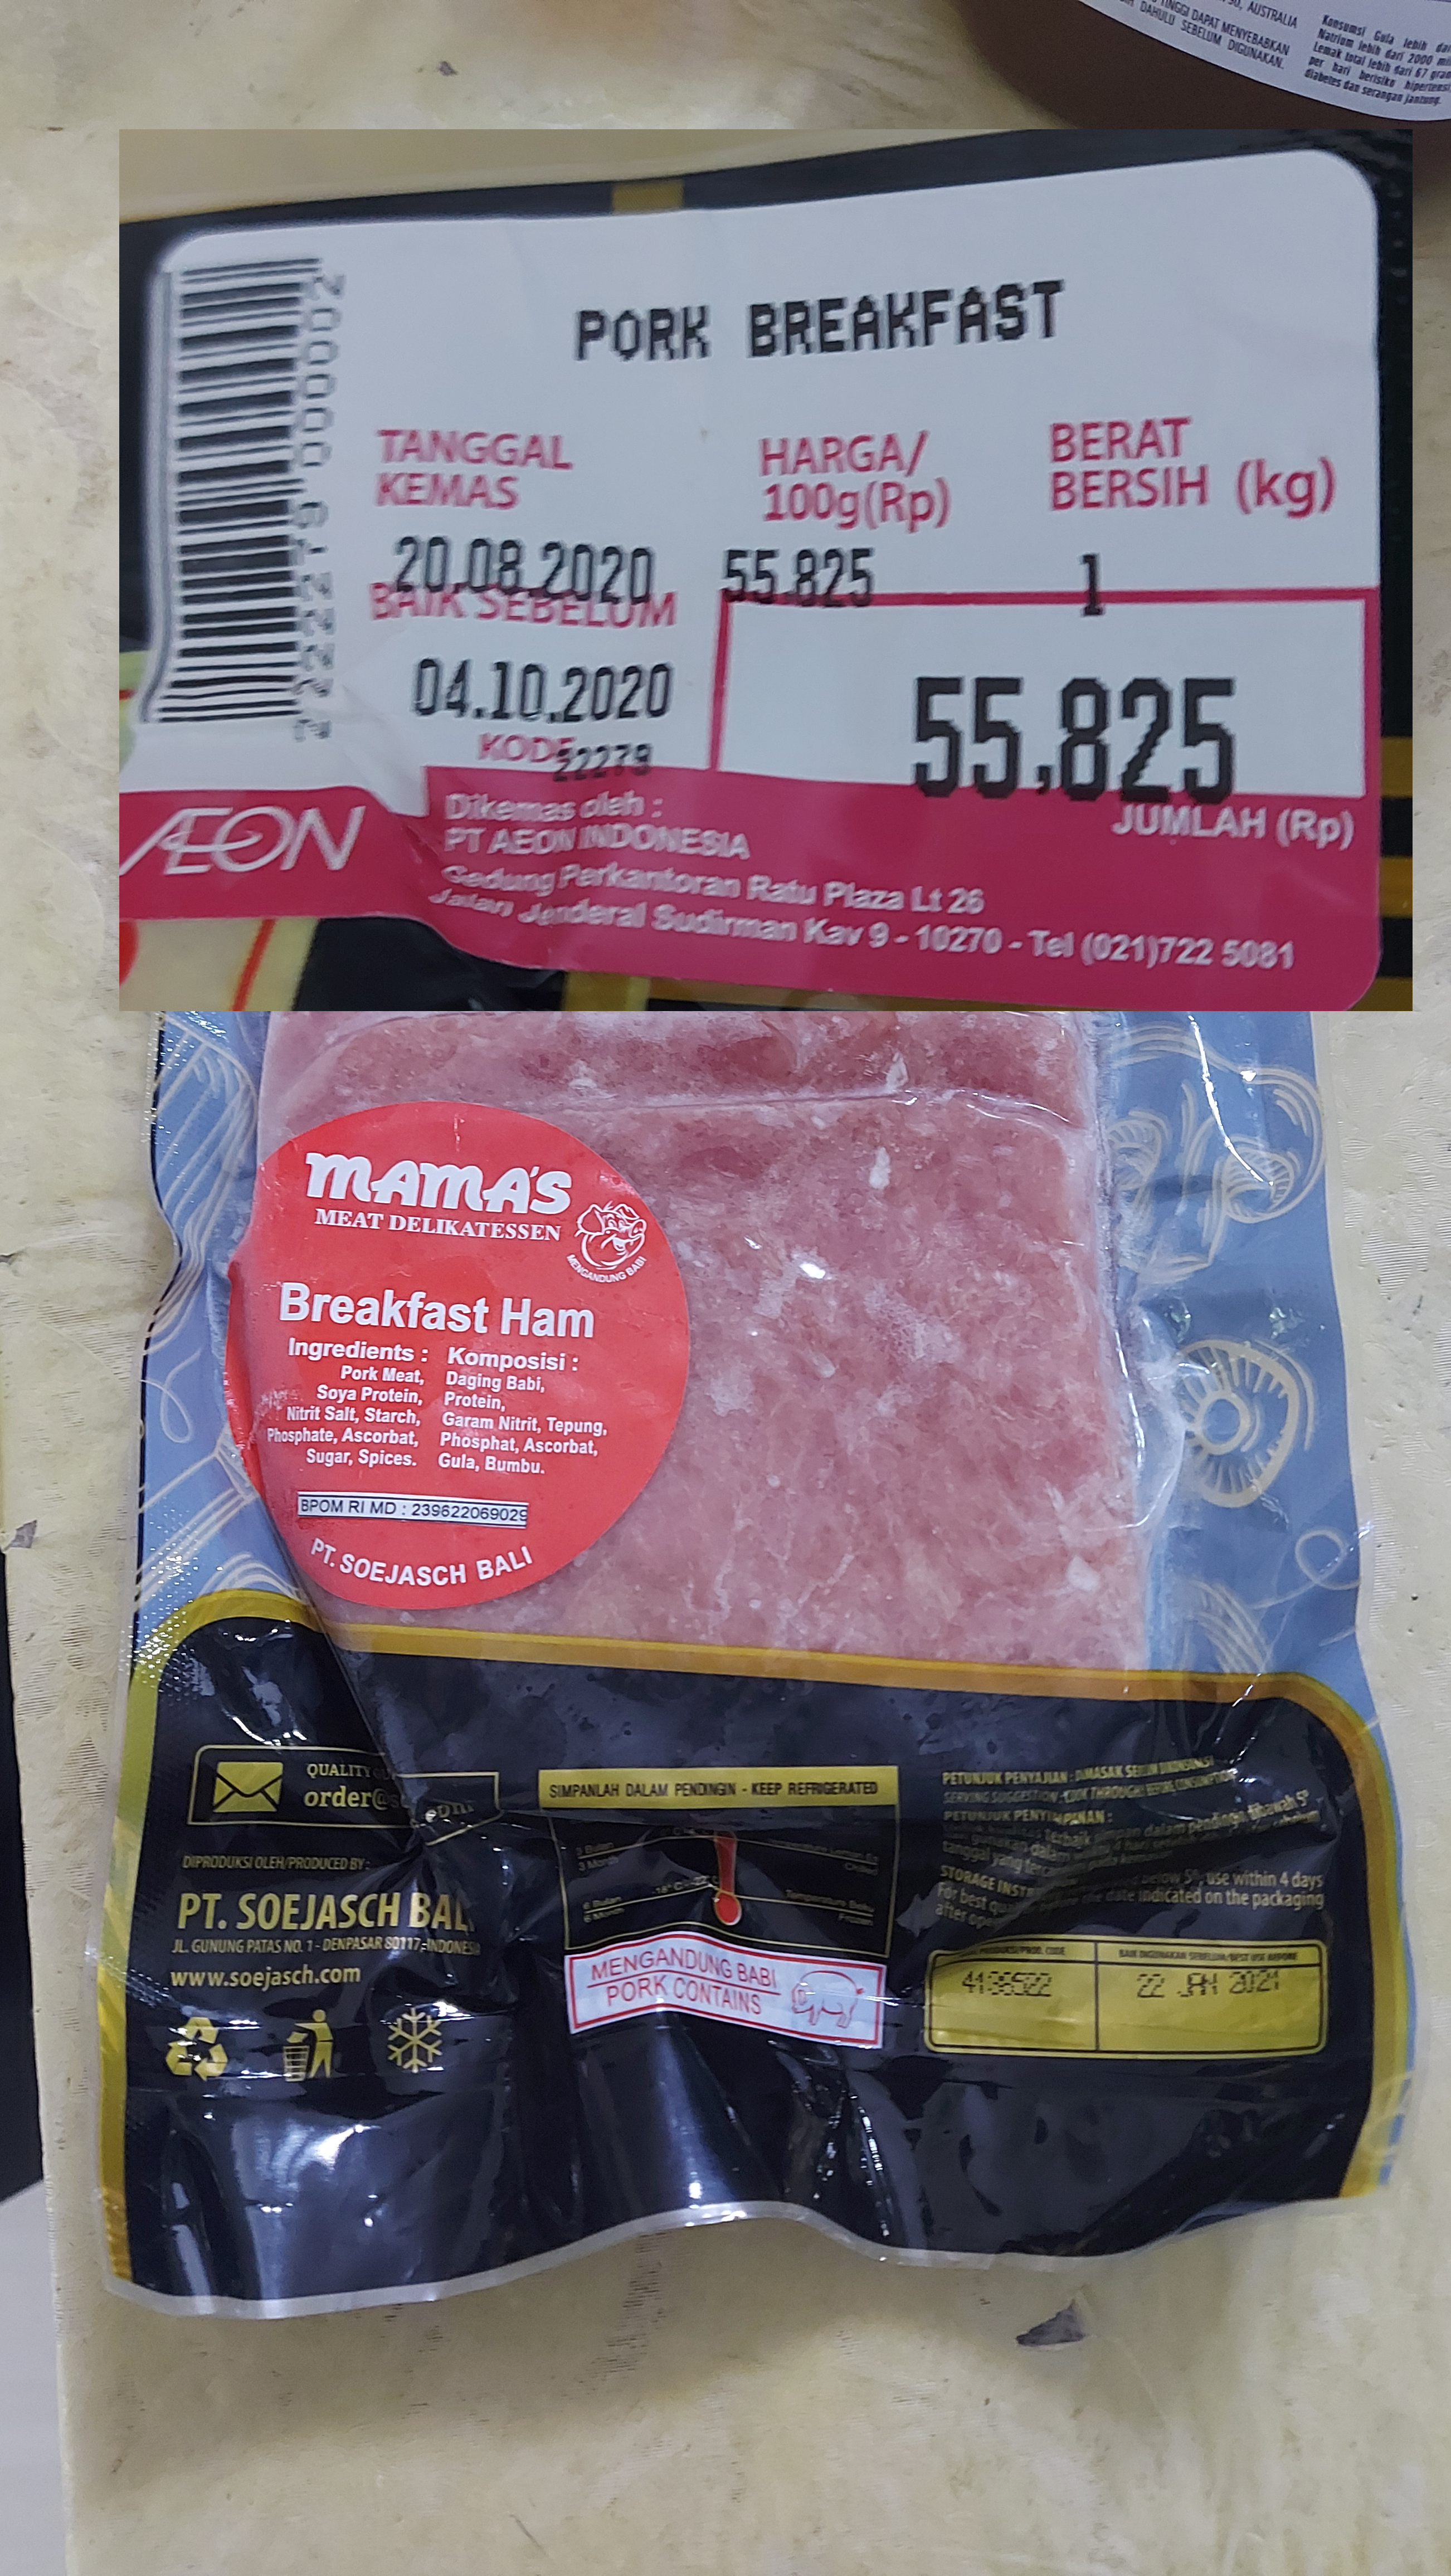 1100g Schweineschinken kosten in Indonesien 55.825 IDR ca. 3,34 €00g Schweineschinken kosten in Indonesien 55.825 IDR ca. 3,34 €